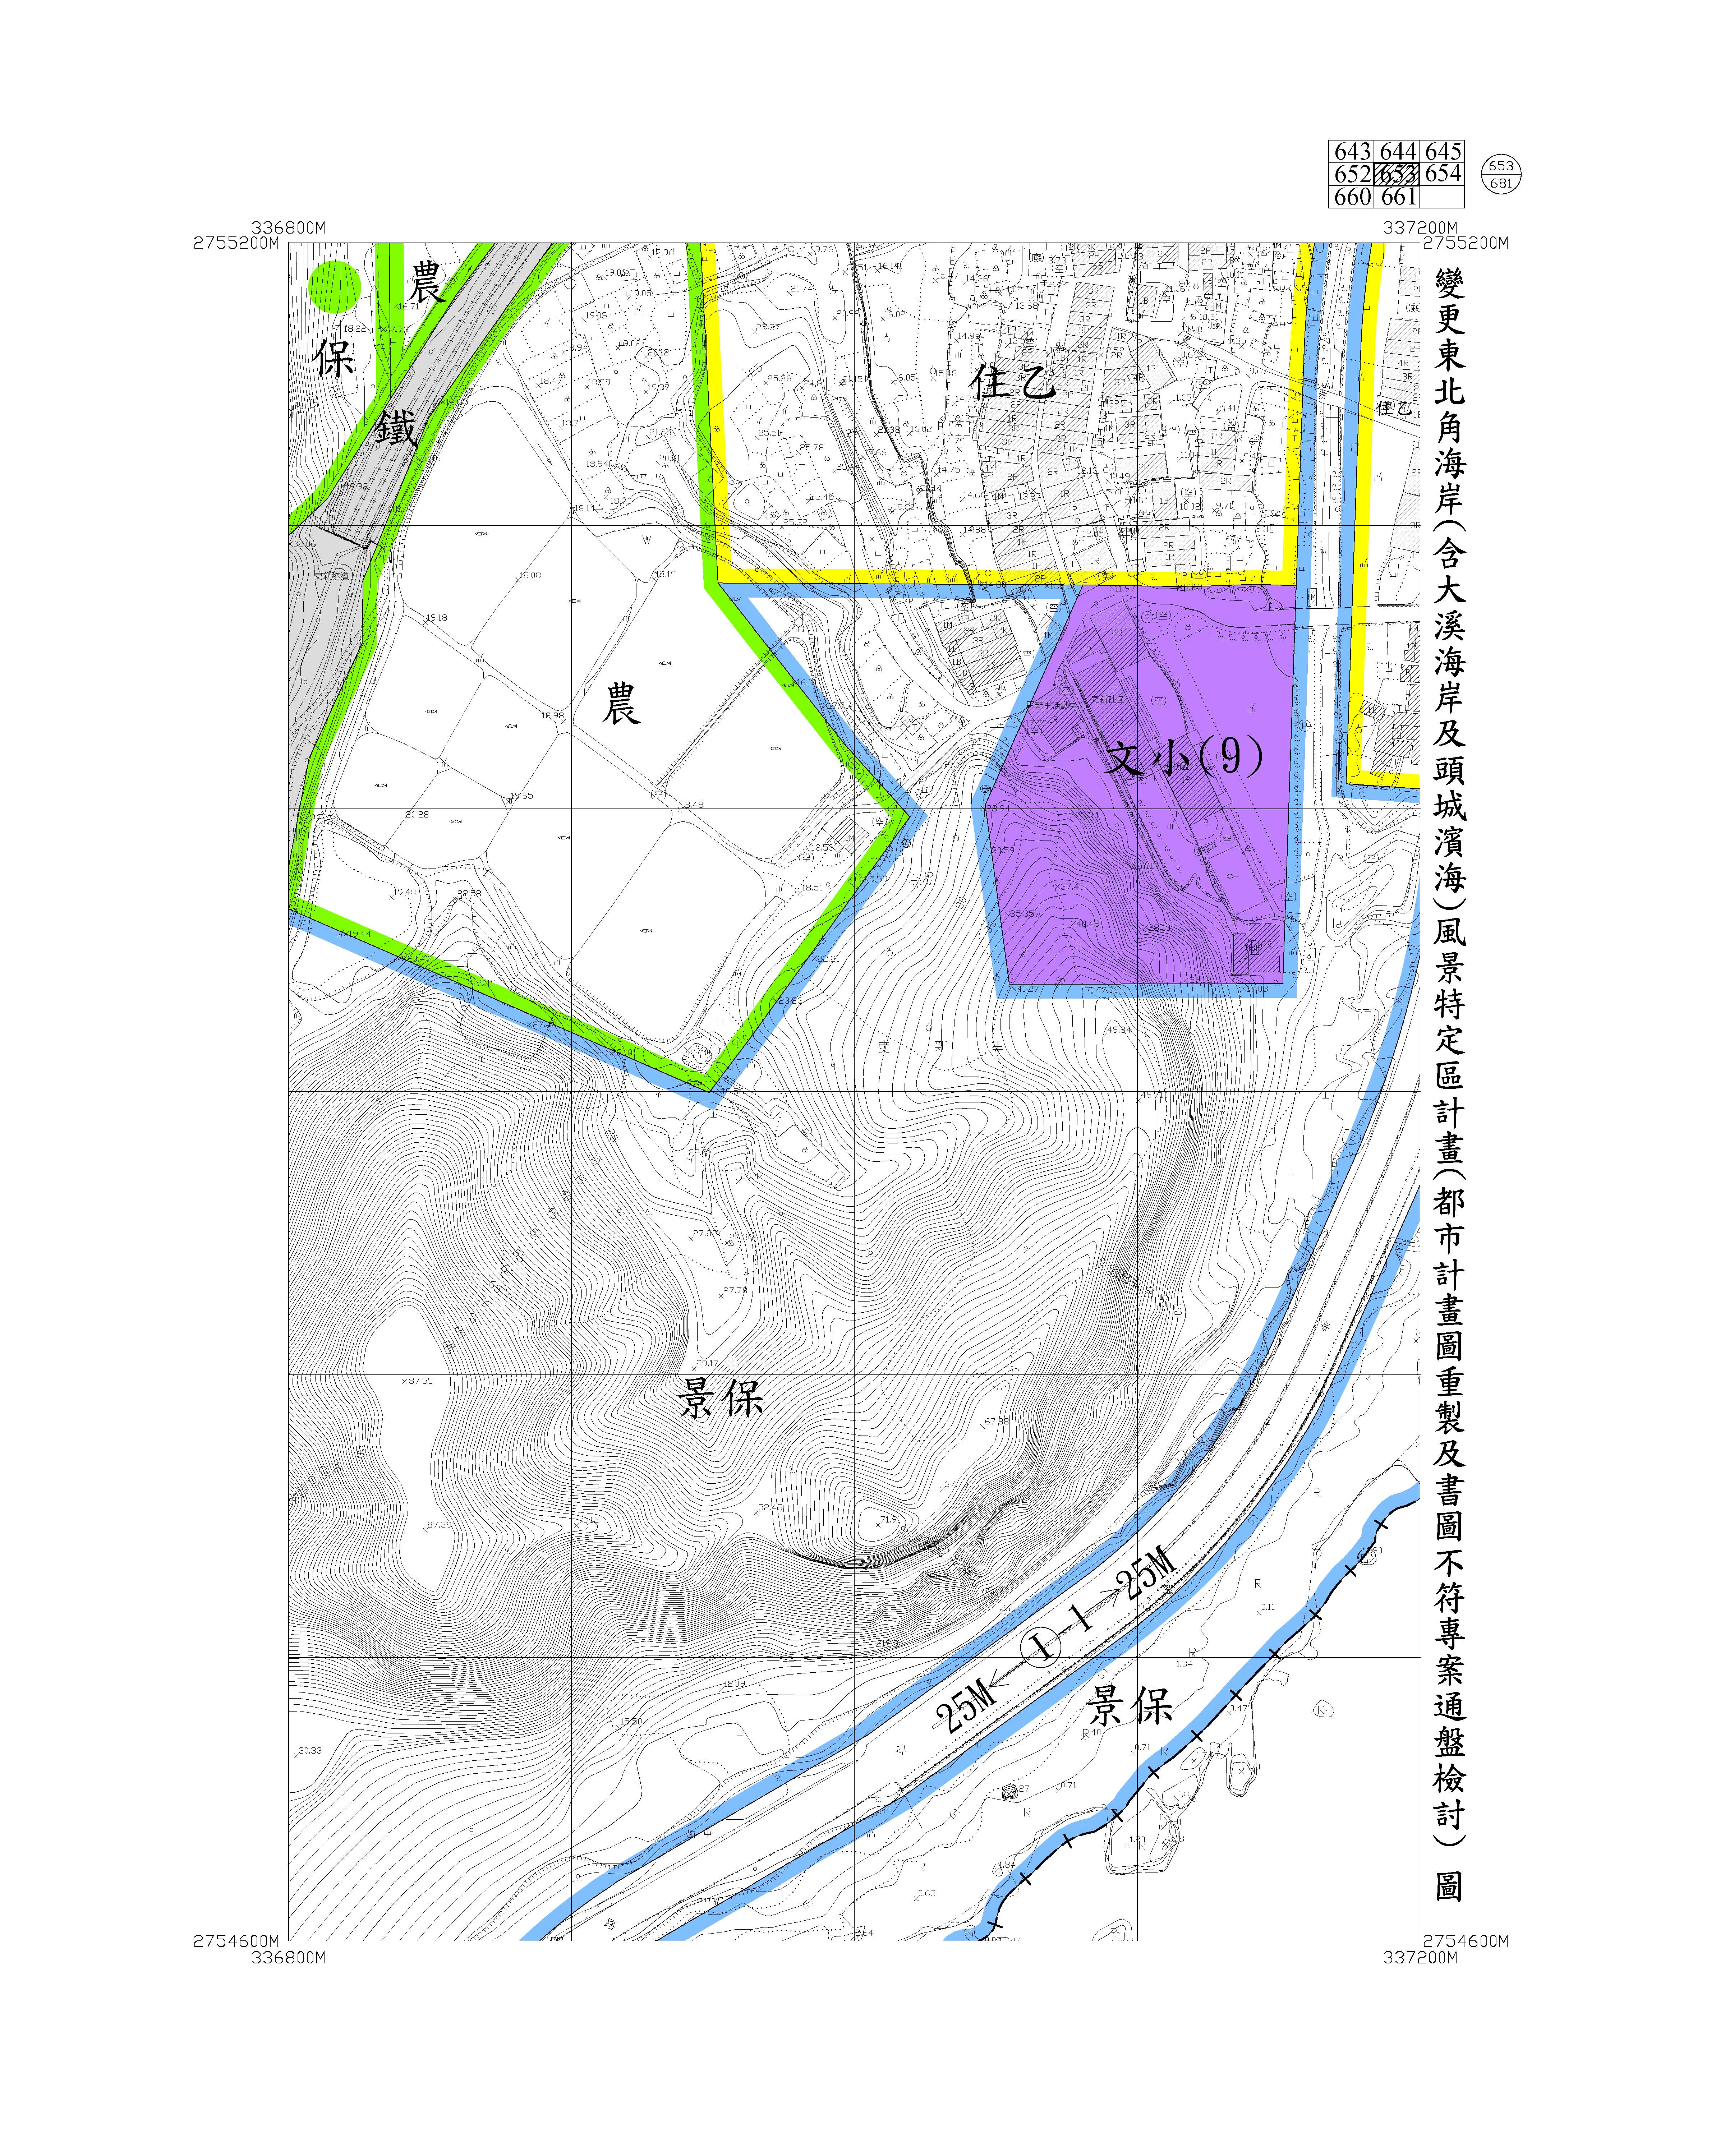 含大溪海岸及頭城濱海都市計畫圖重製及書圖不符專案通盤檢討圖資662